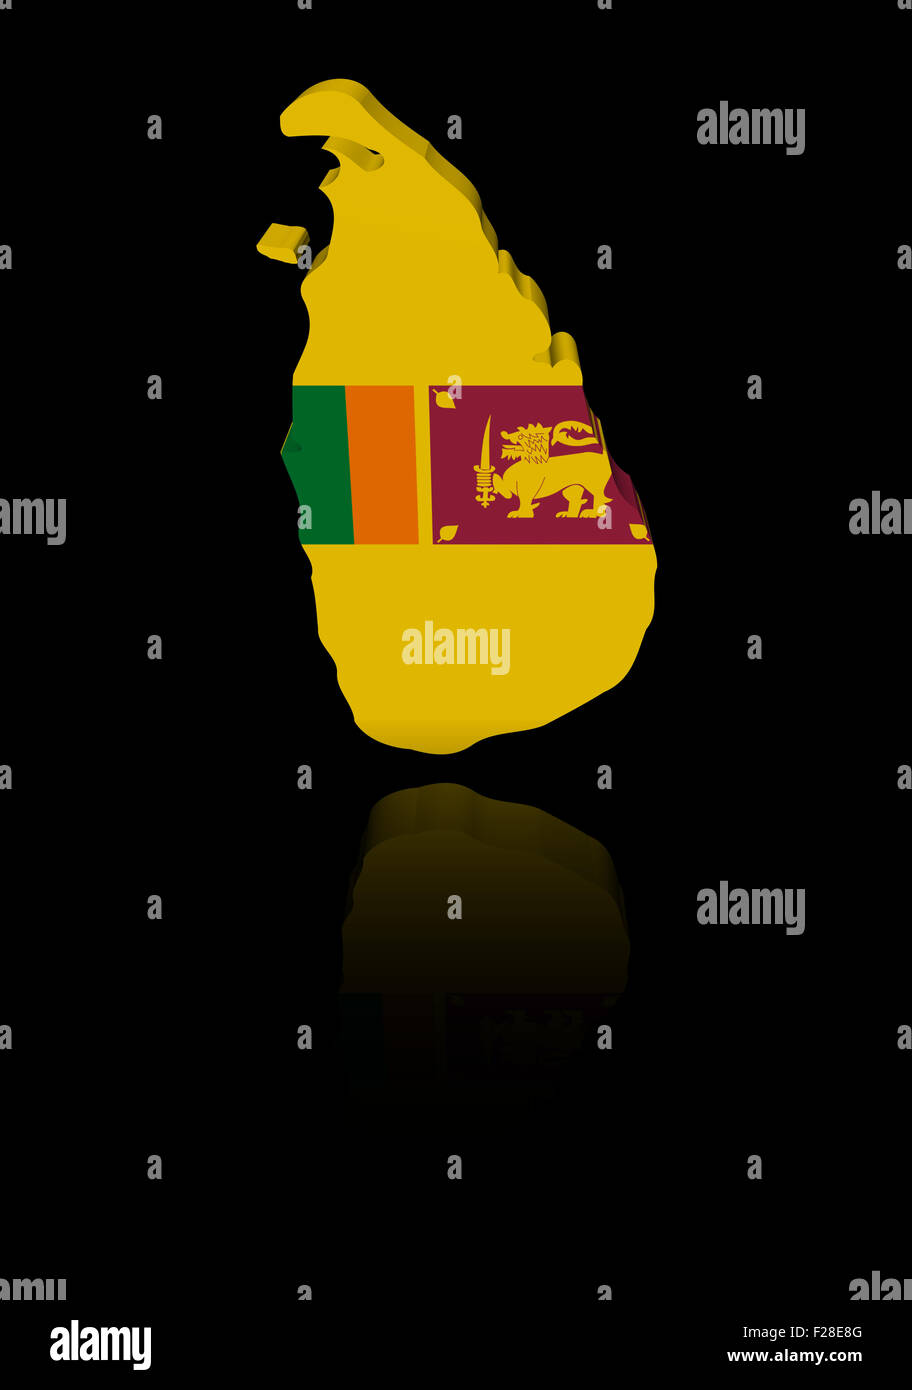 Sri Lanka map flag with reflection illustration Stock Photo